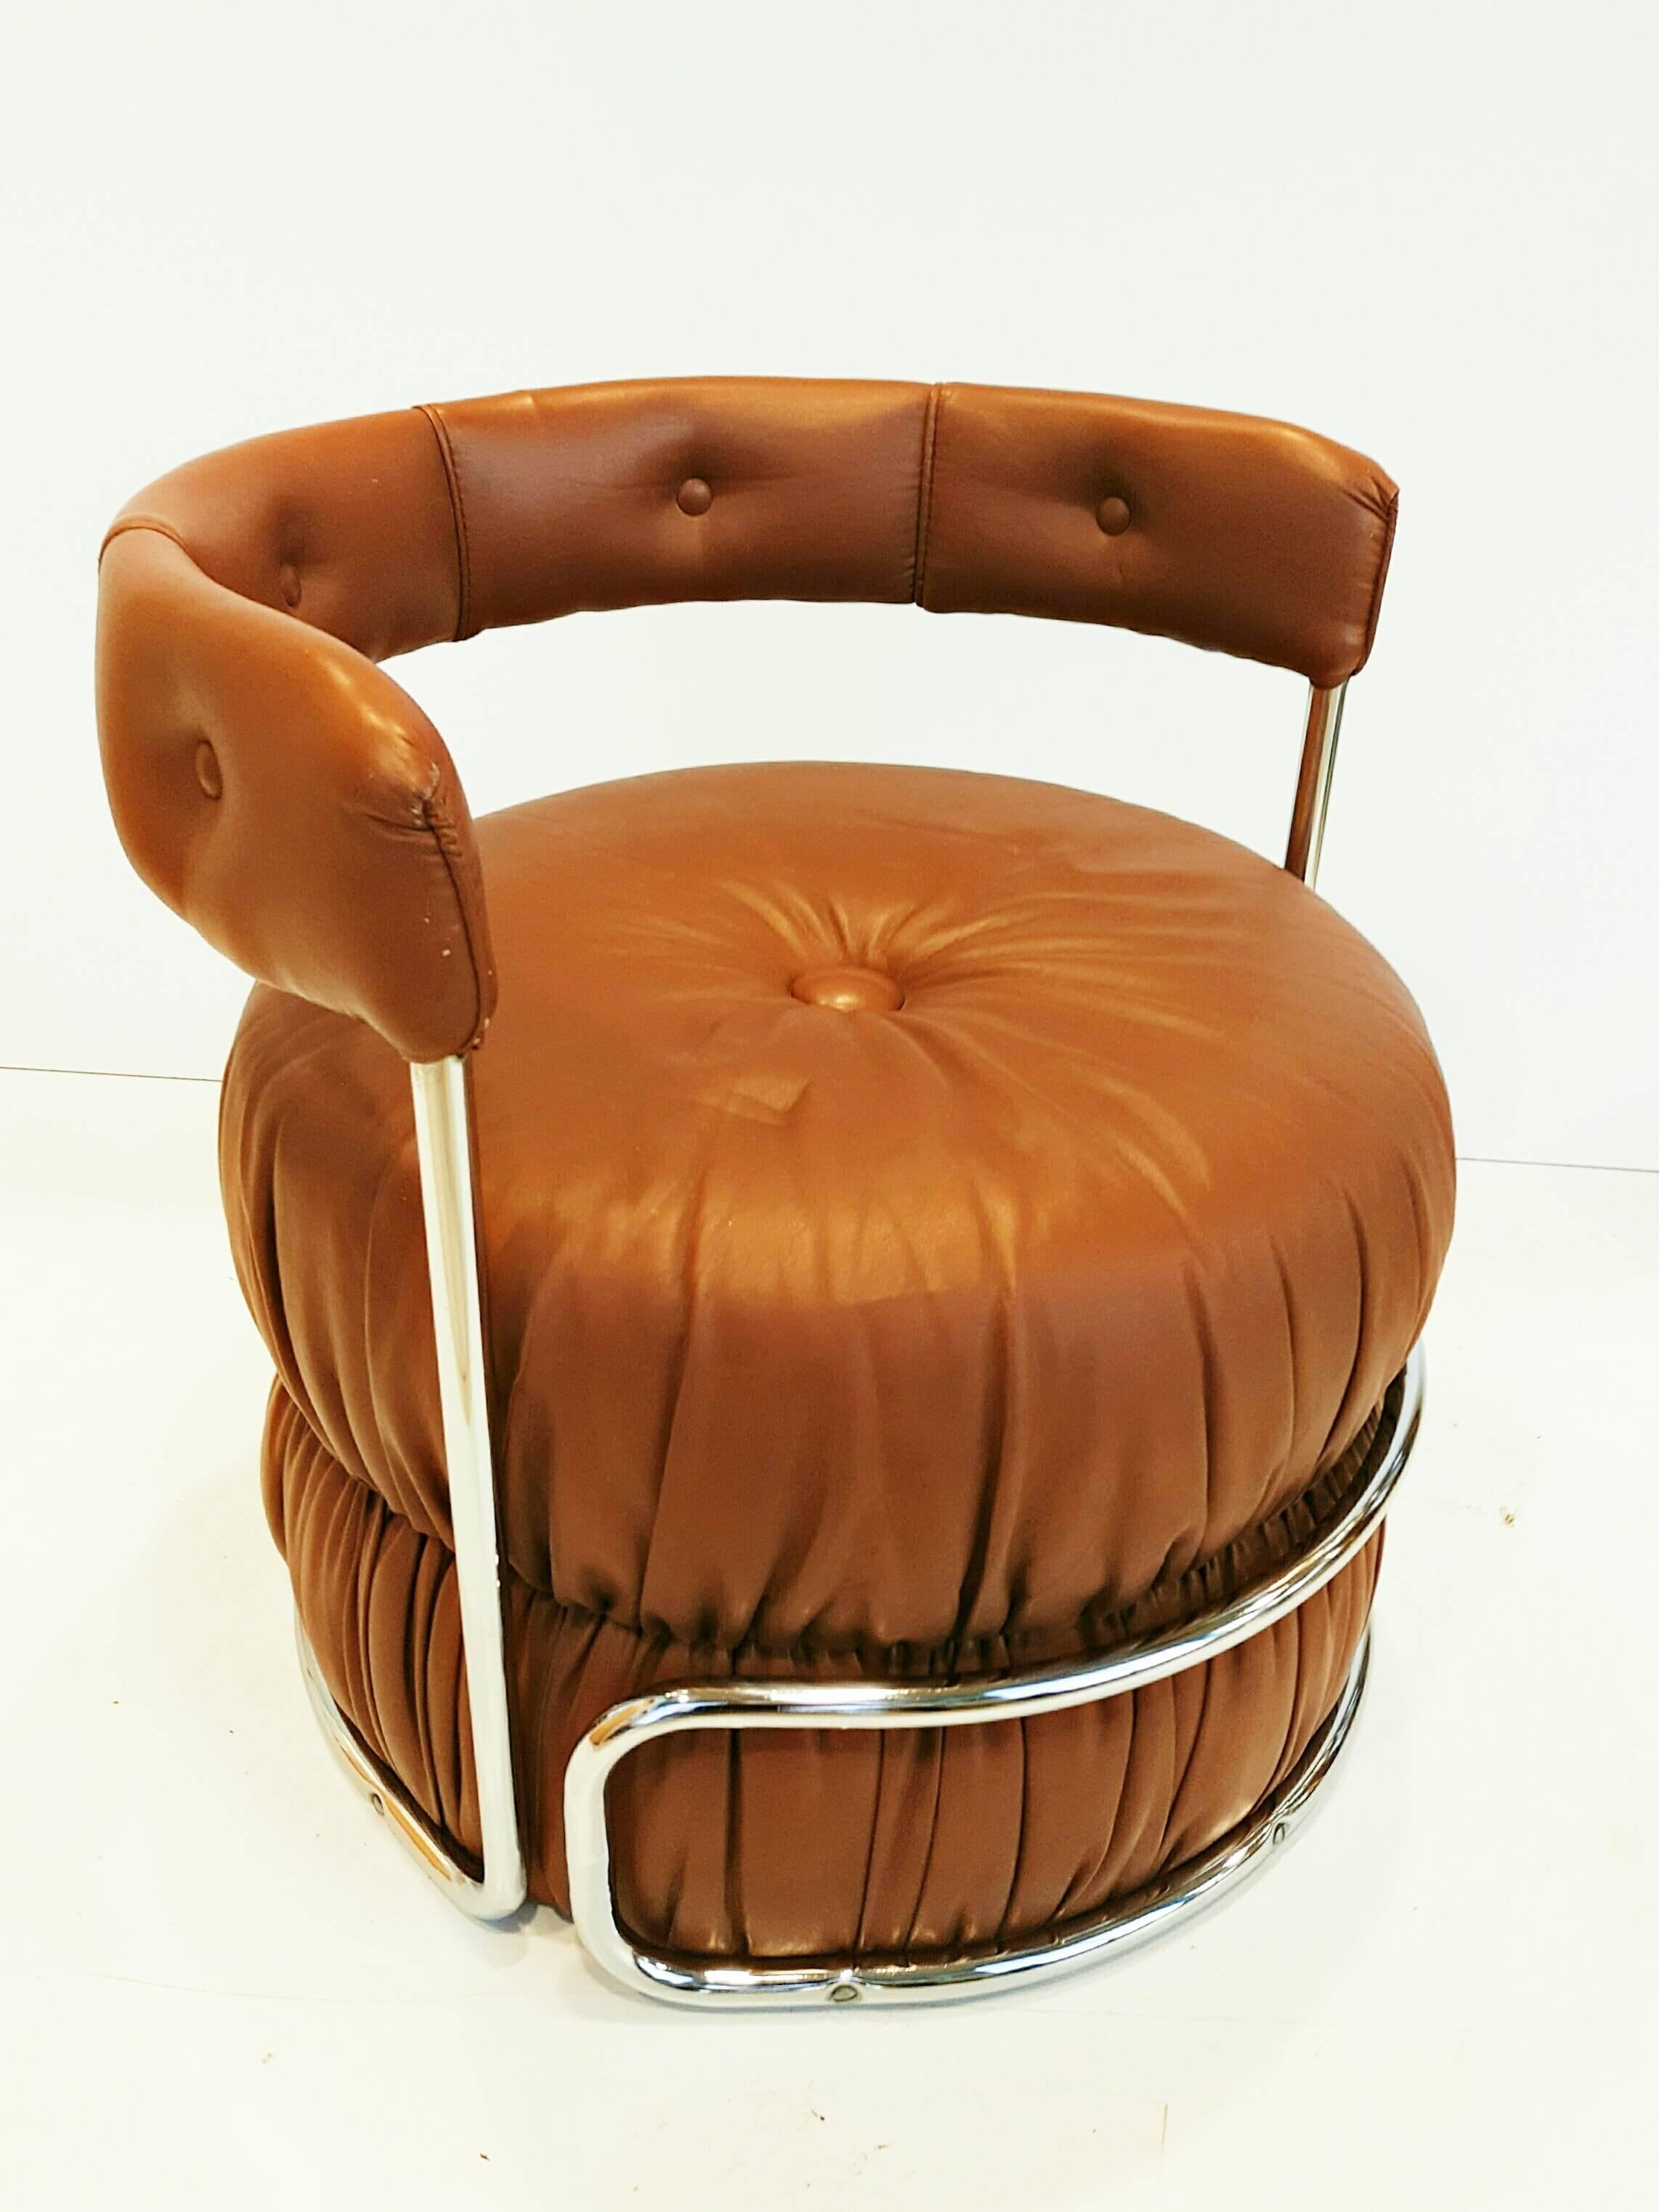 Schöne Französisch Pouf Stühle in Frankreich in den 1970er Jahren hergestellt, tan Kunstleder und Chrom in perfektem Vintage-Zustand.